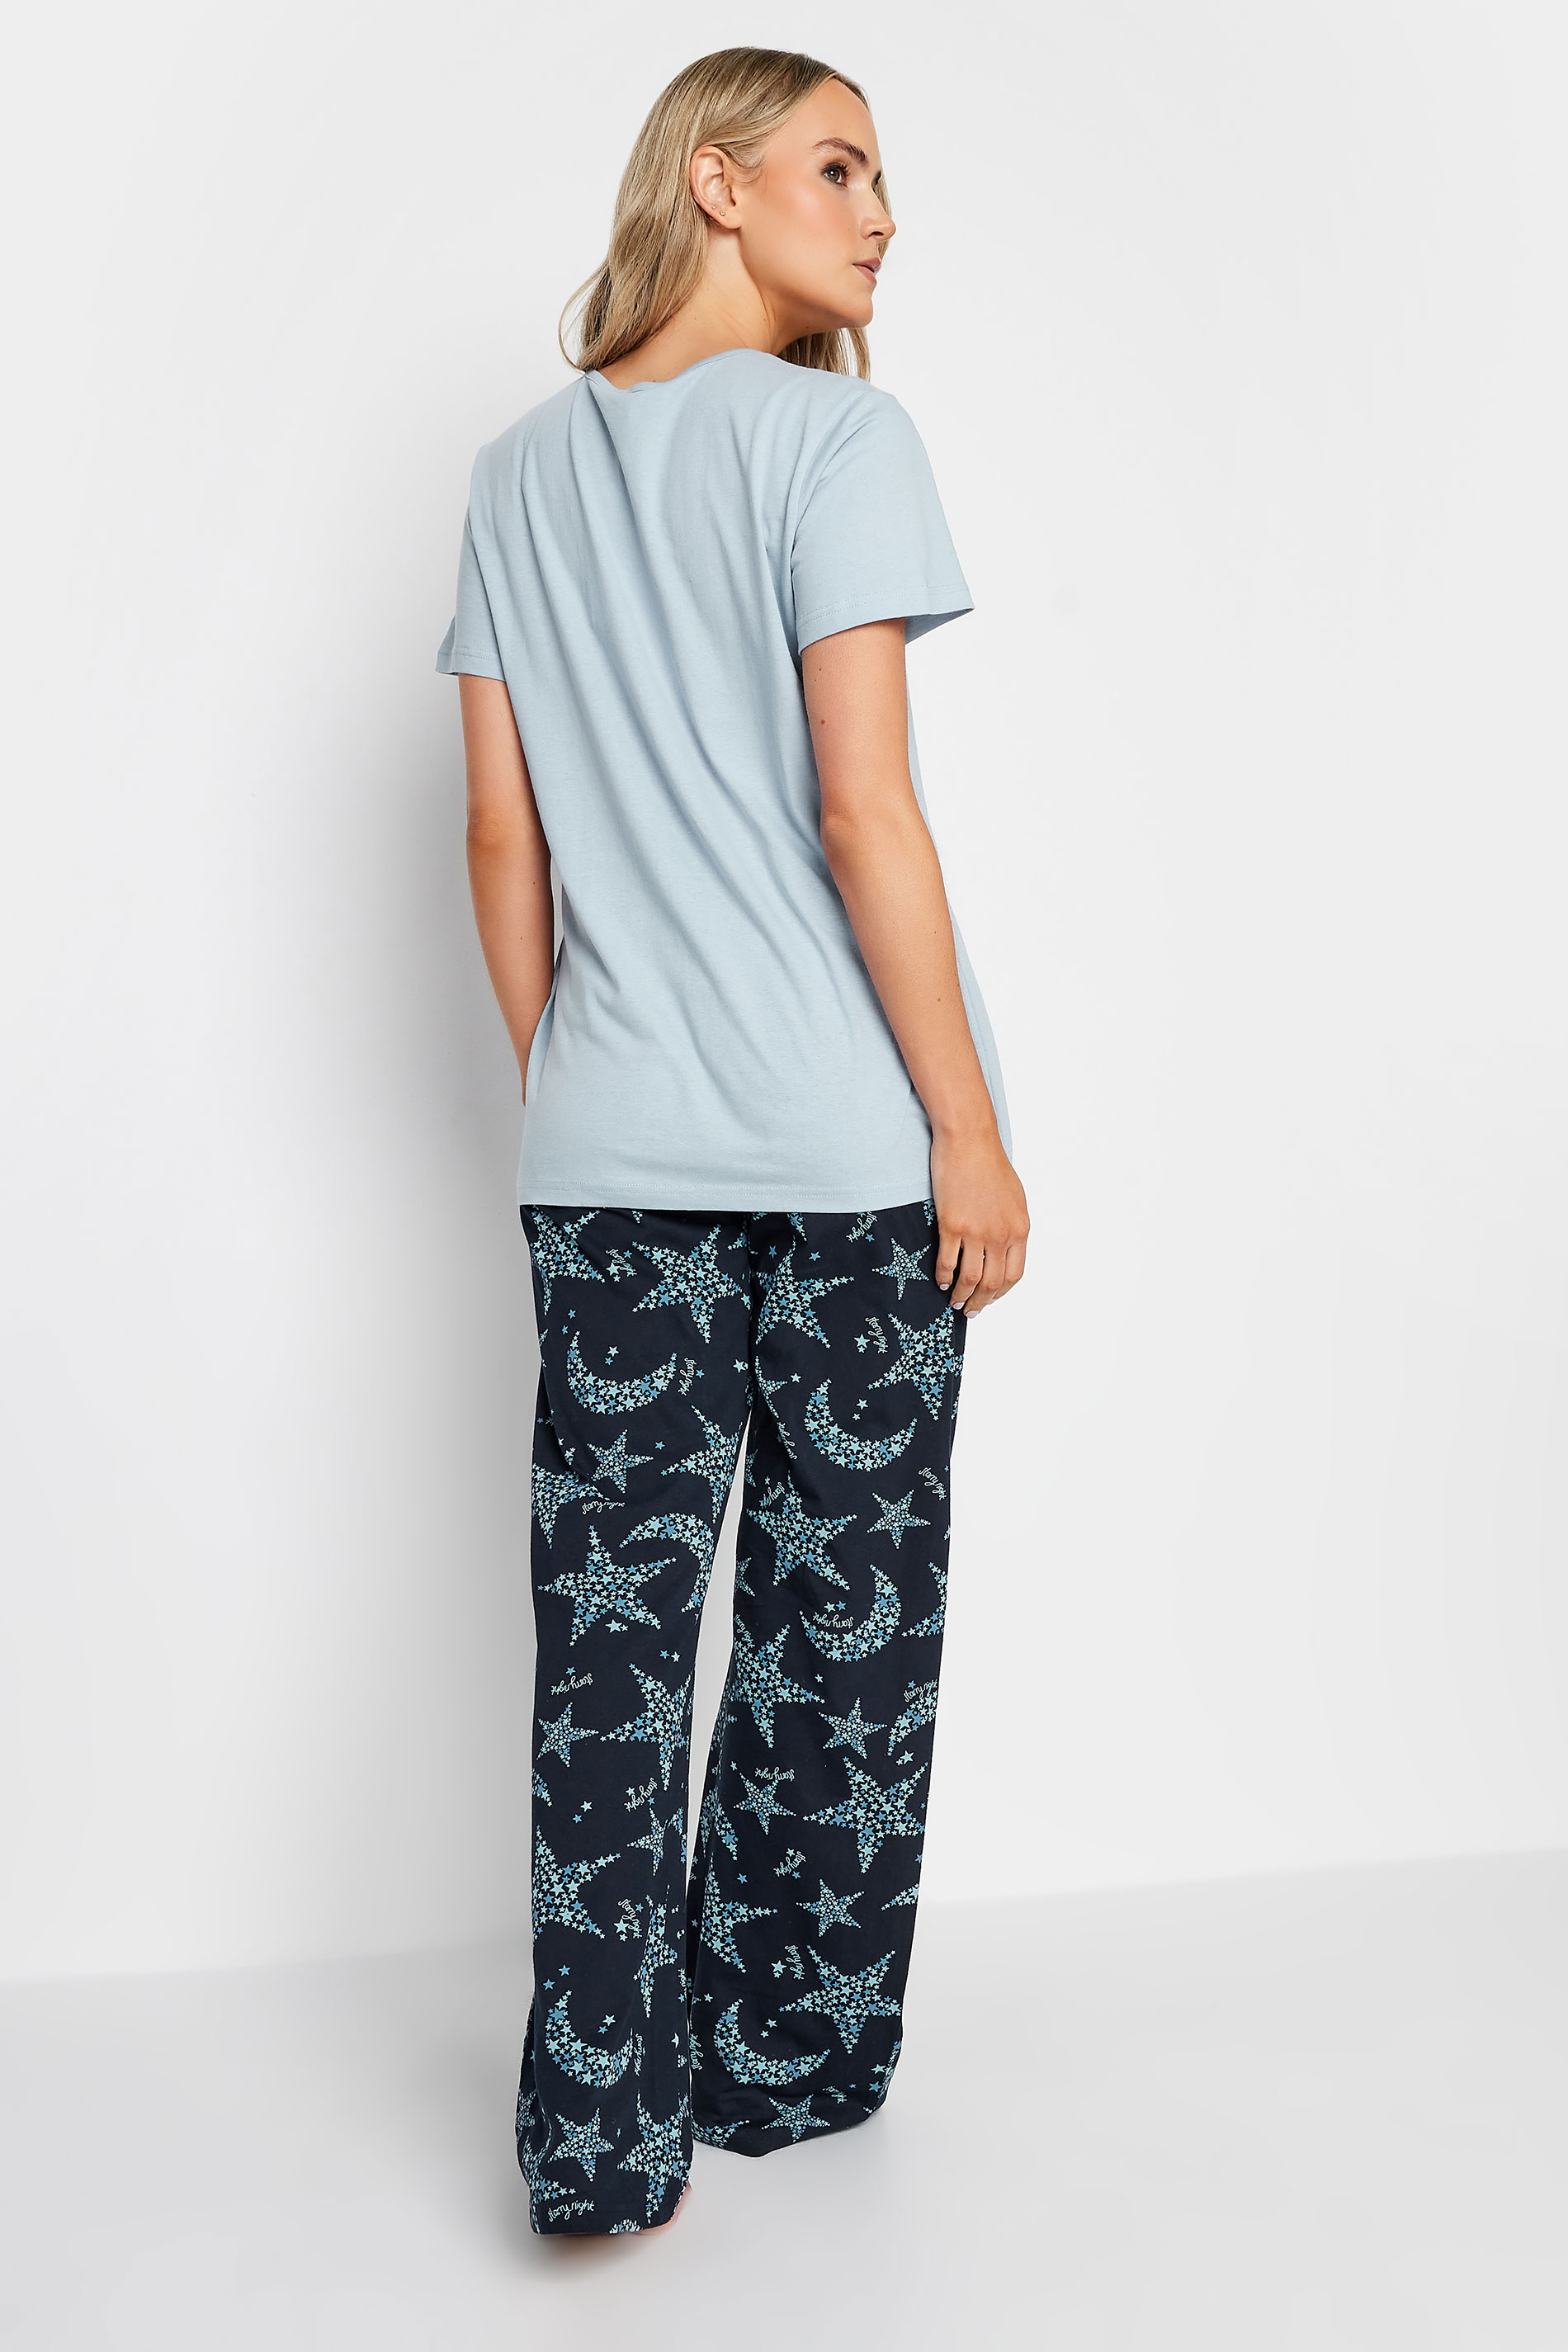 LTS Tall Grey Star Print Pyjama Set | Long Tall Sally  3